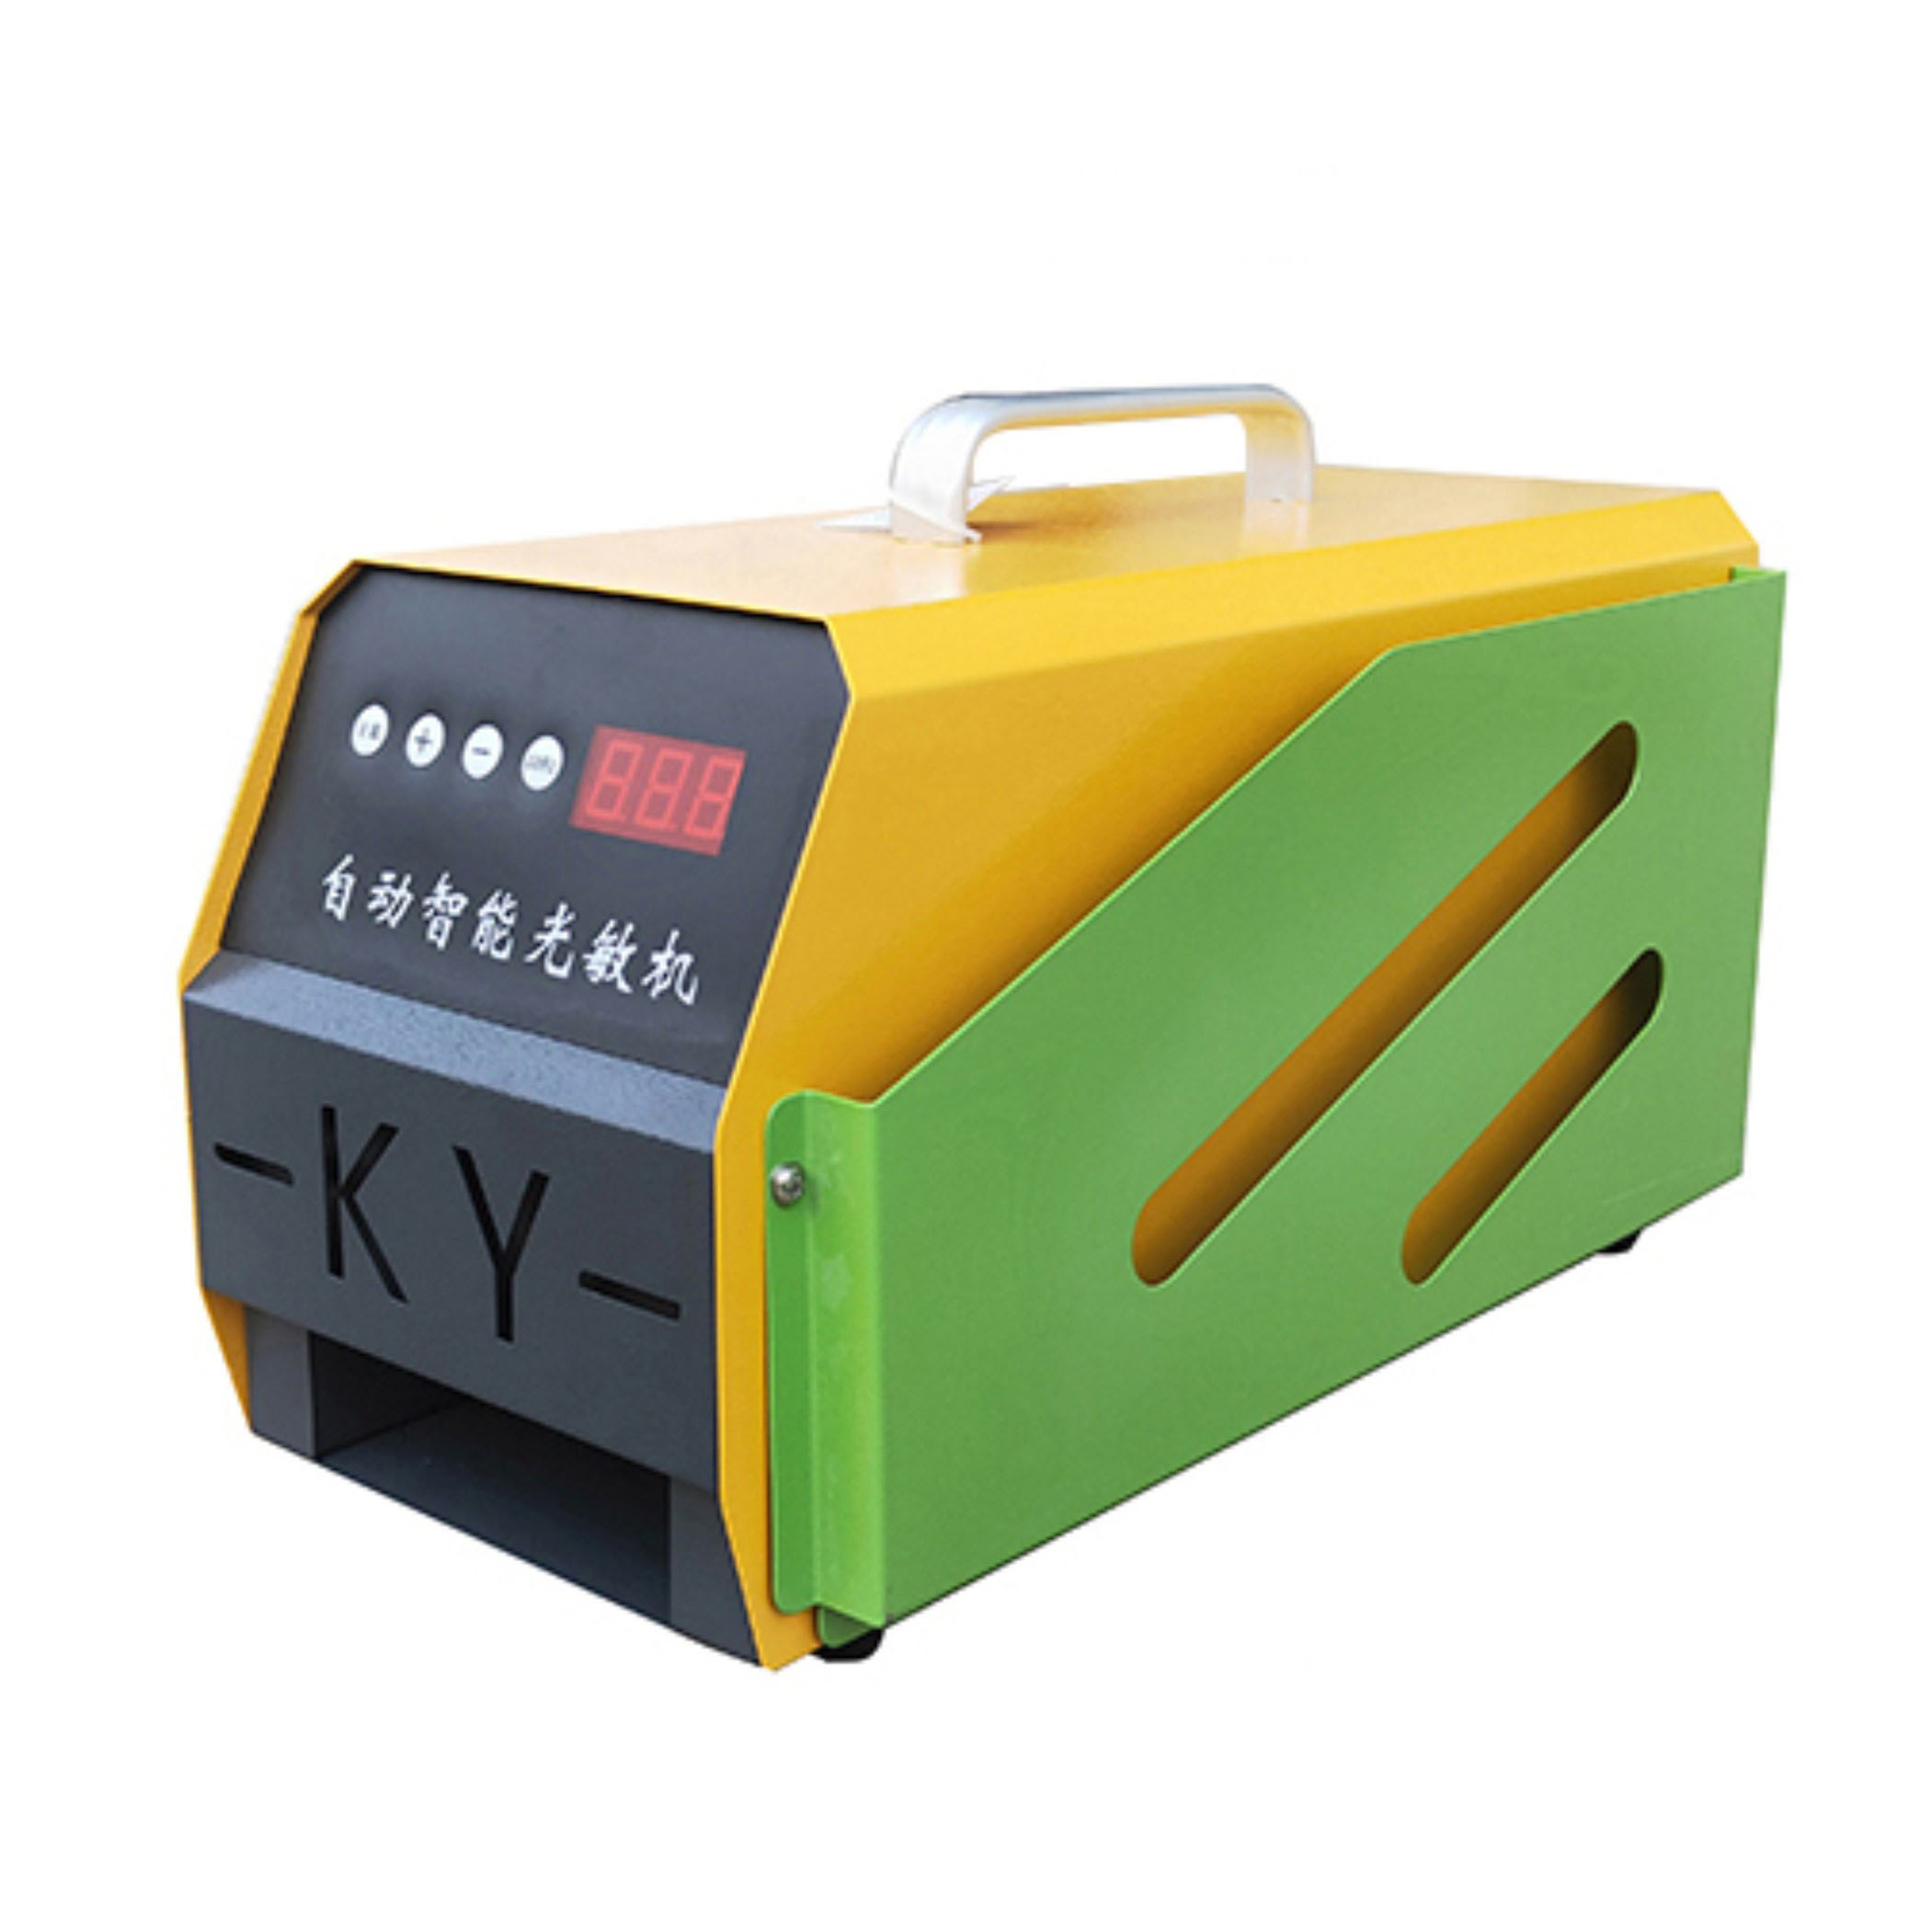 自动智能KY-ZD50型印章机